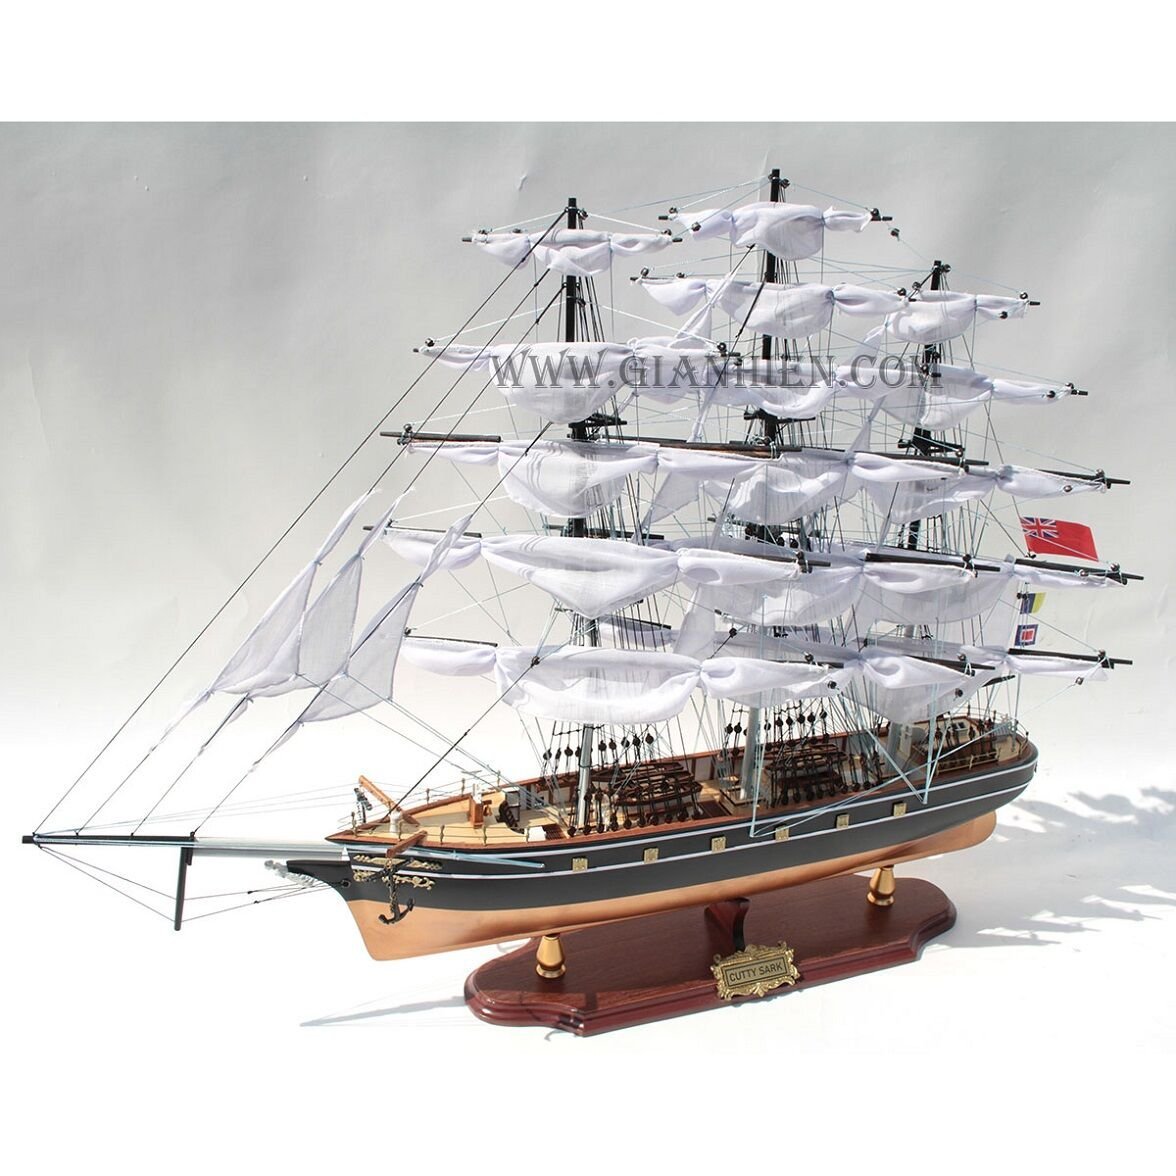 Cutty Sark Dekoratif Ahşap Yelkenli Gemi Modeli (70 cm)